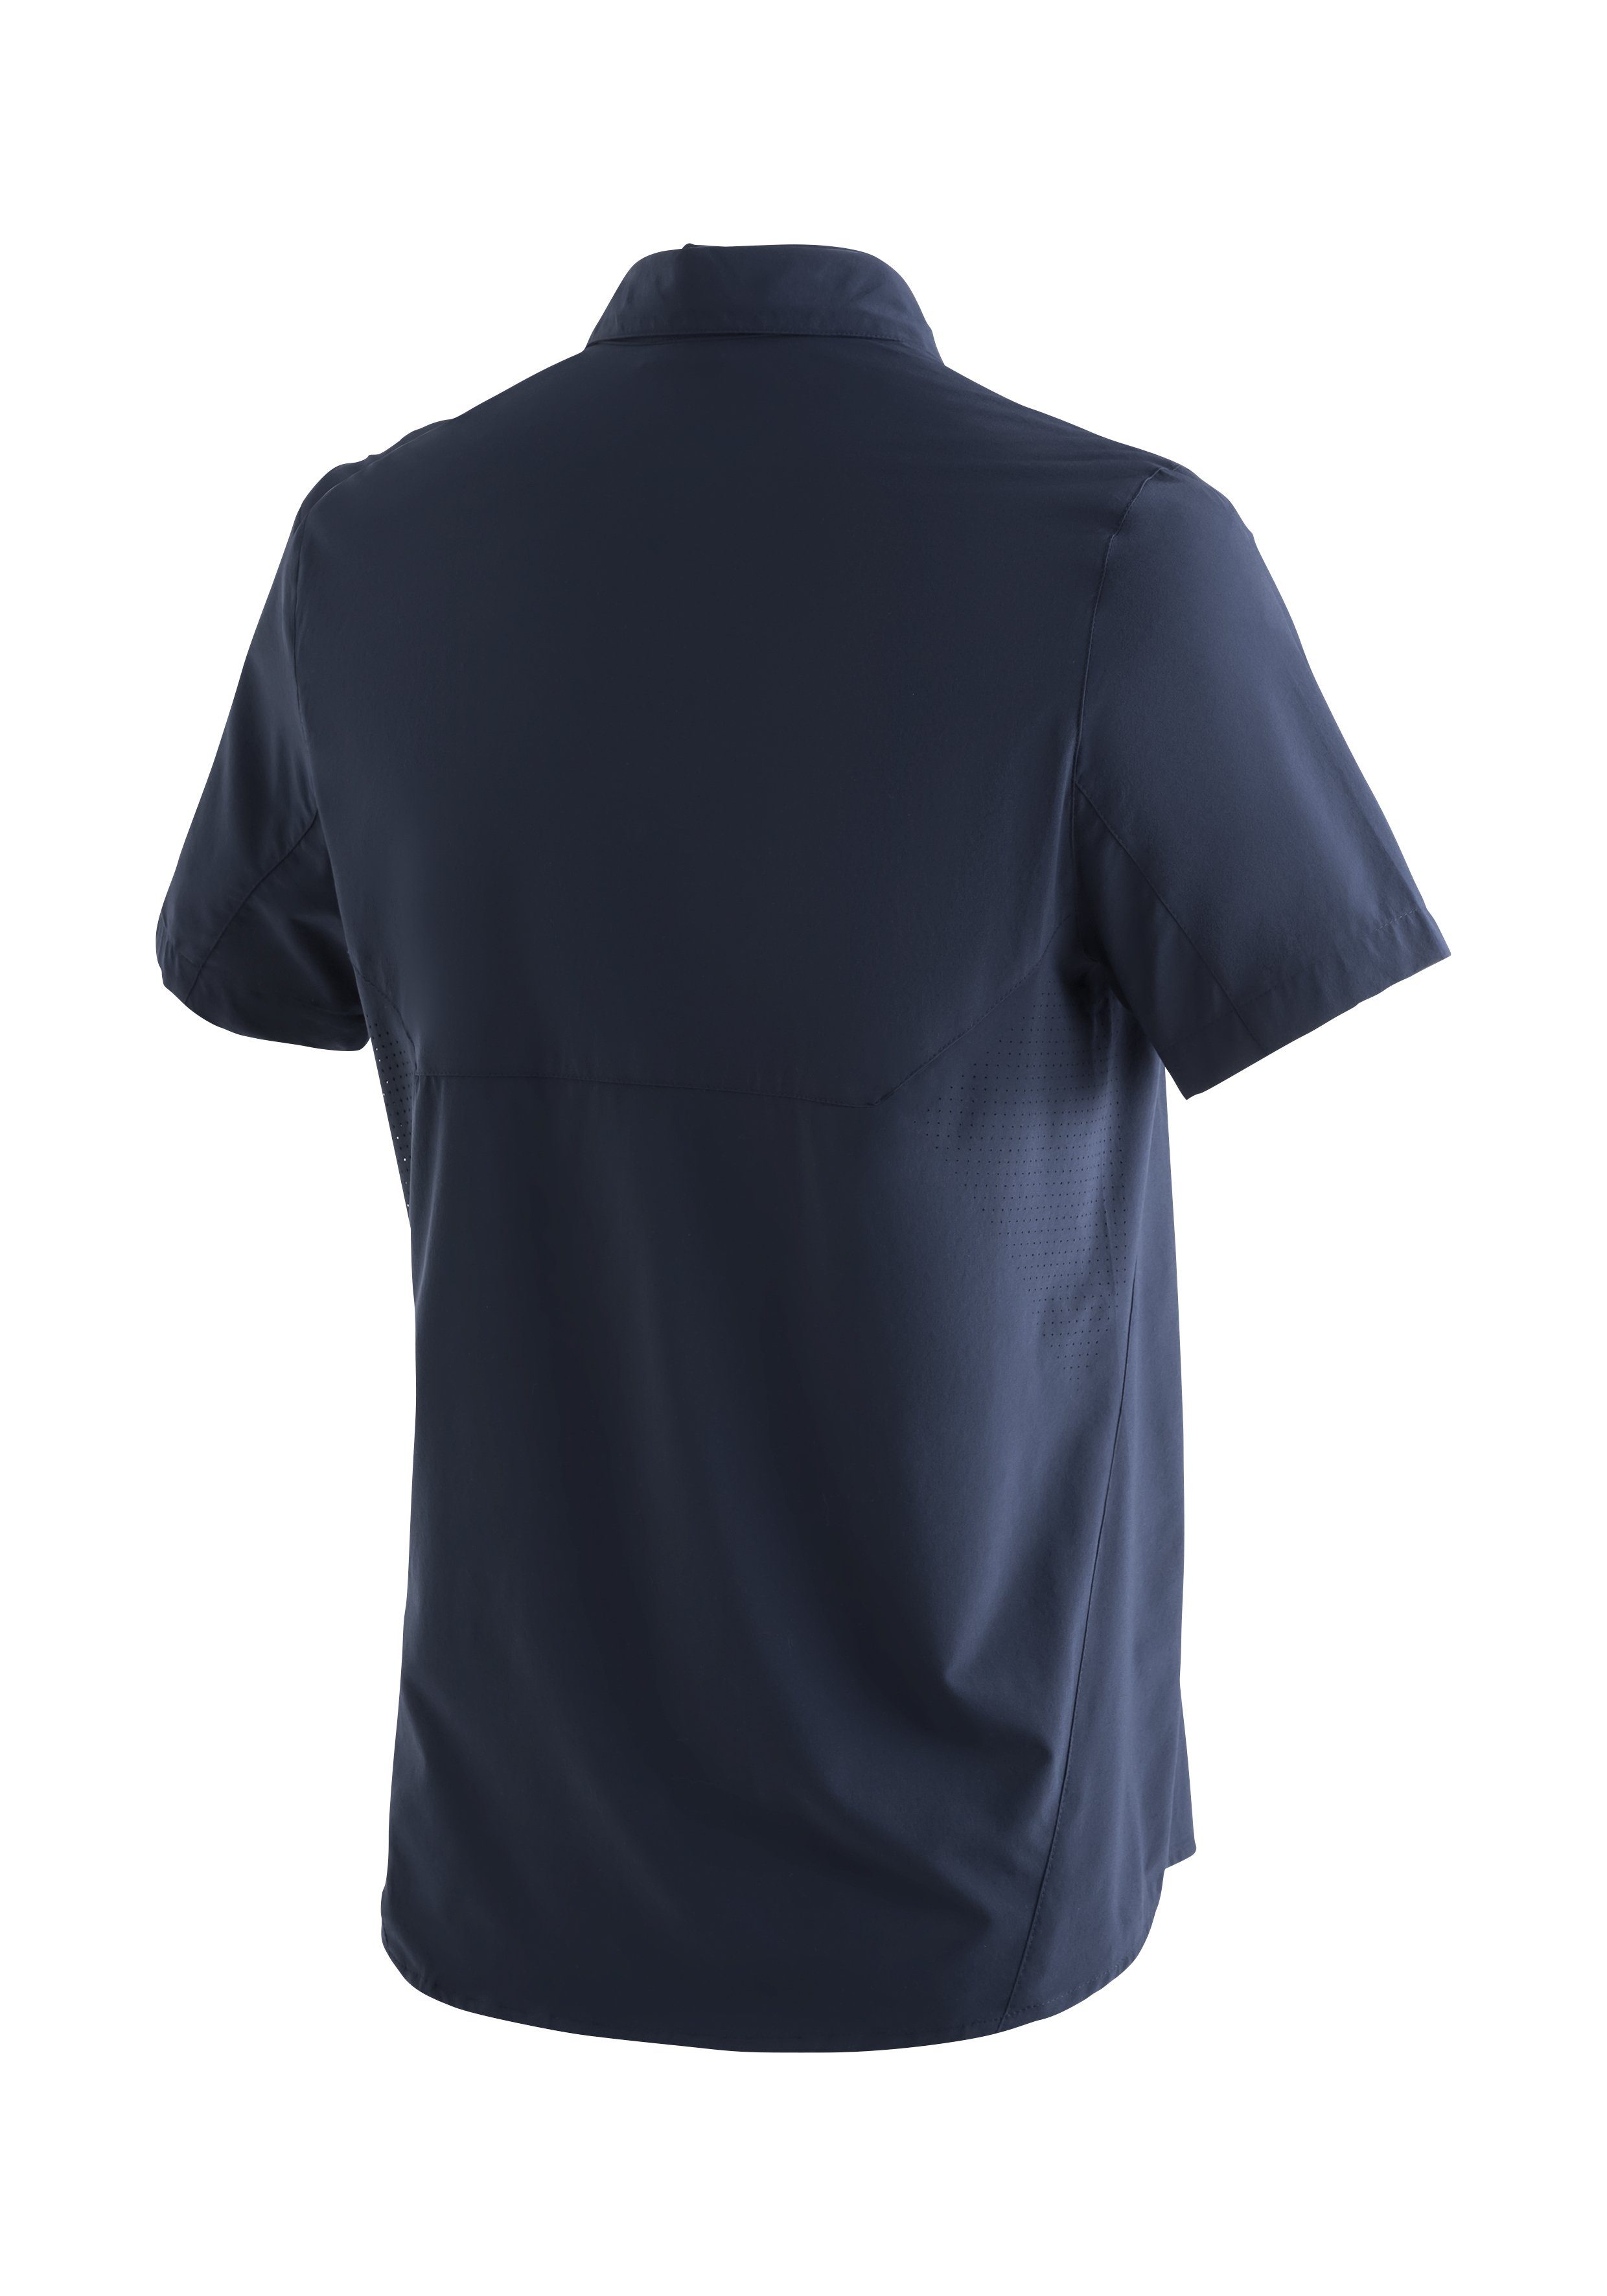 Tec mit Maier dunkelblau MS/S Trekkinghemd Funktionshemd Sonnenkragen Leichtes, elastisches Sinnes Sports